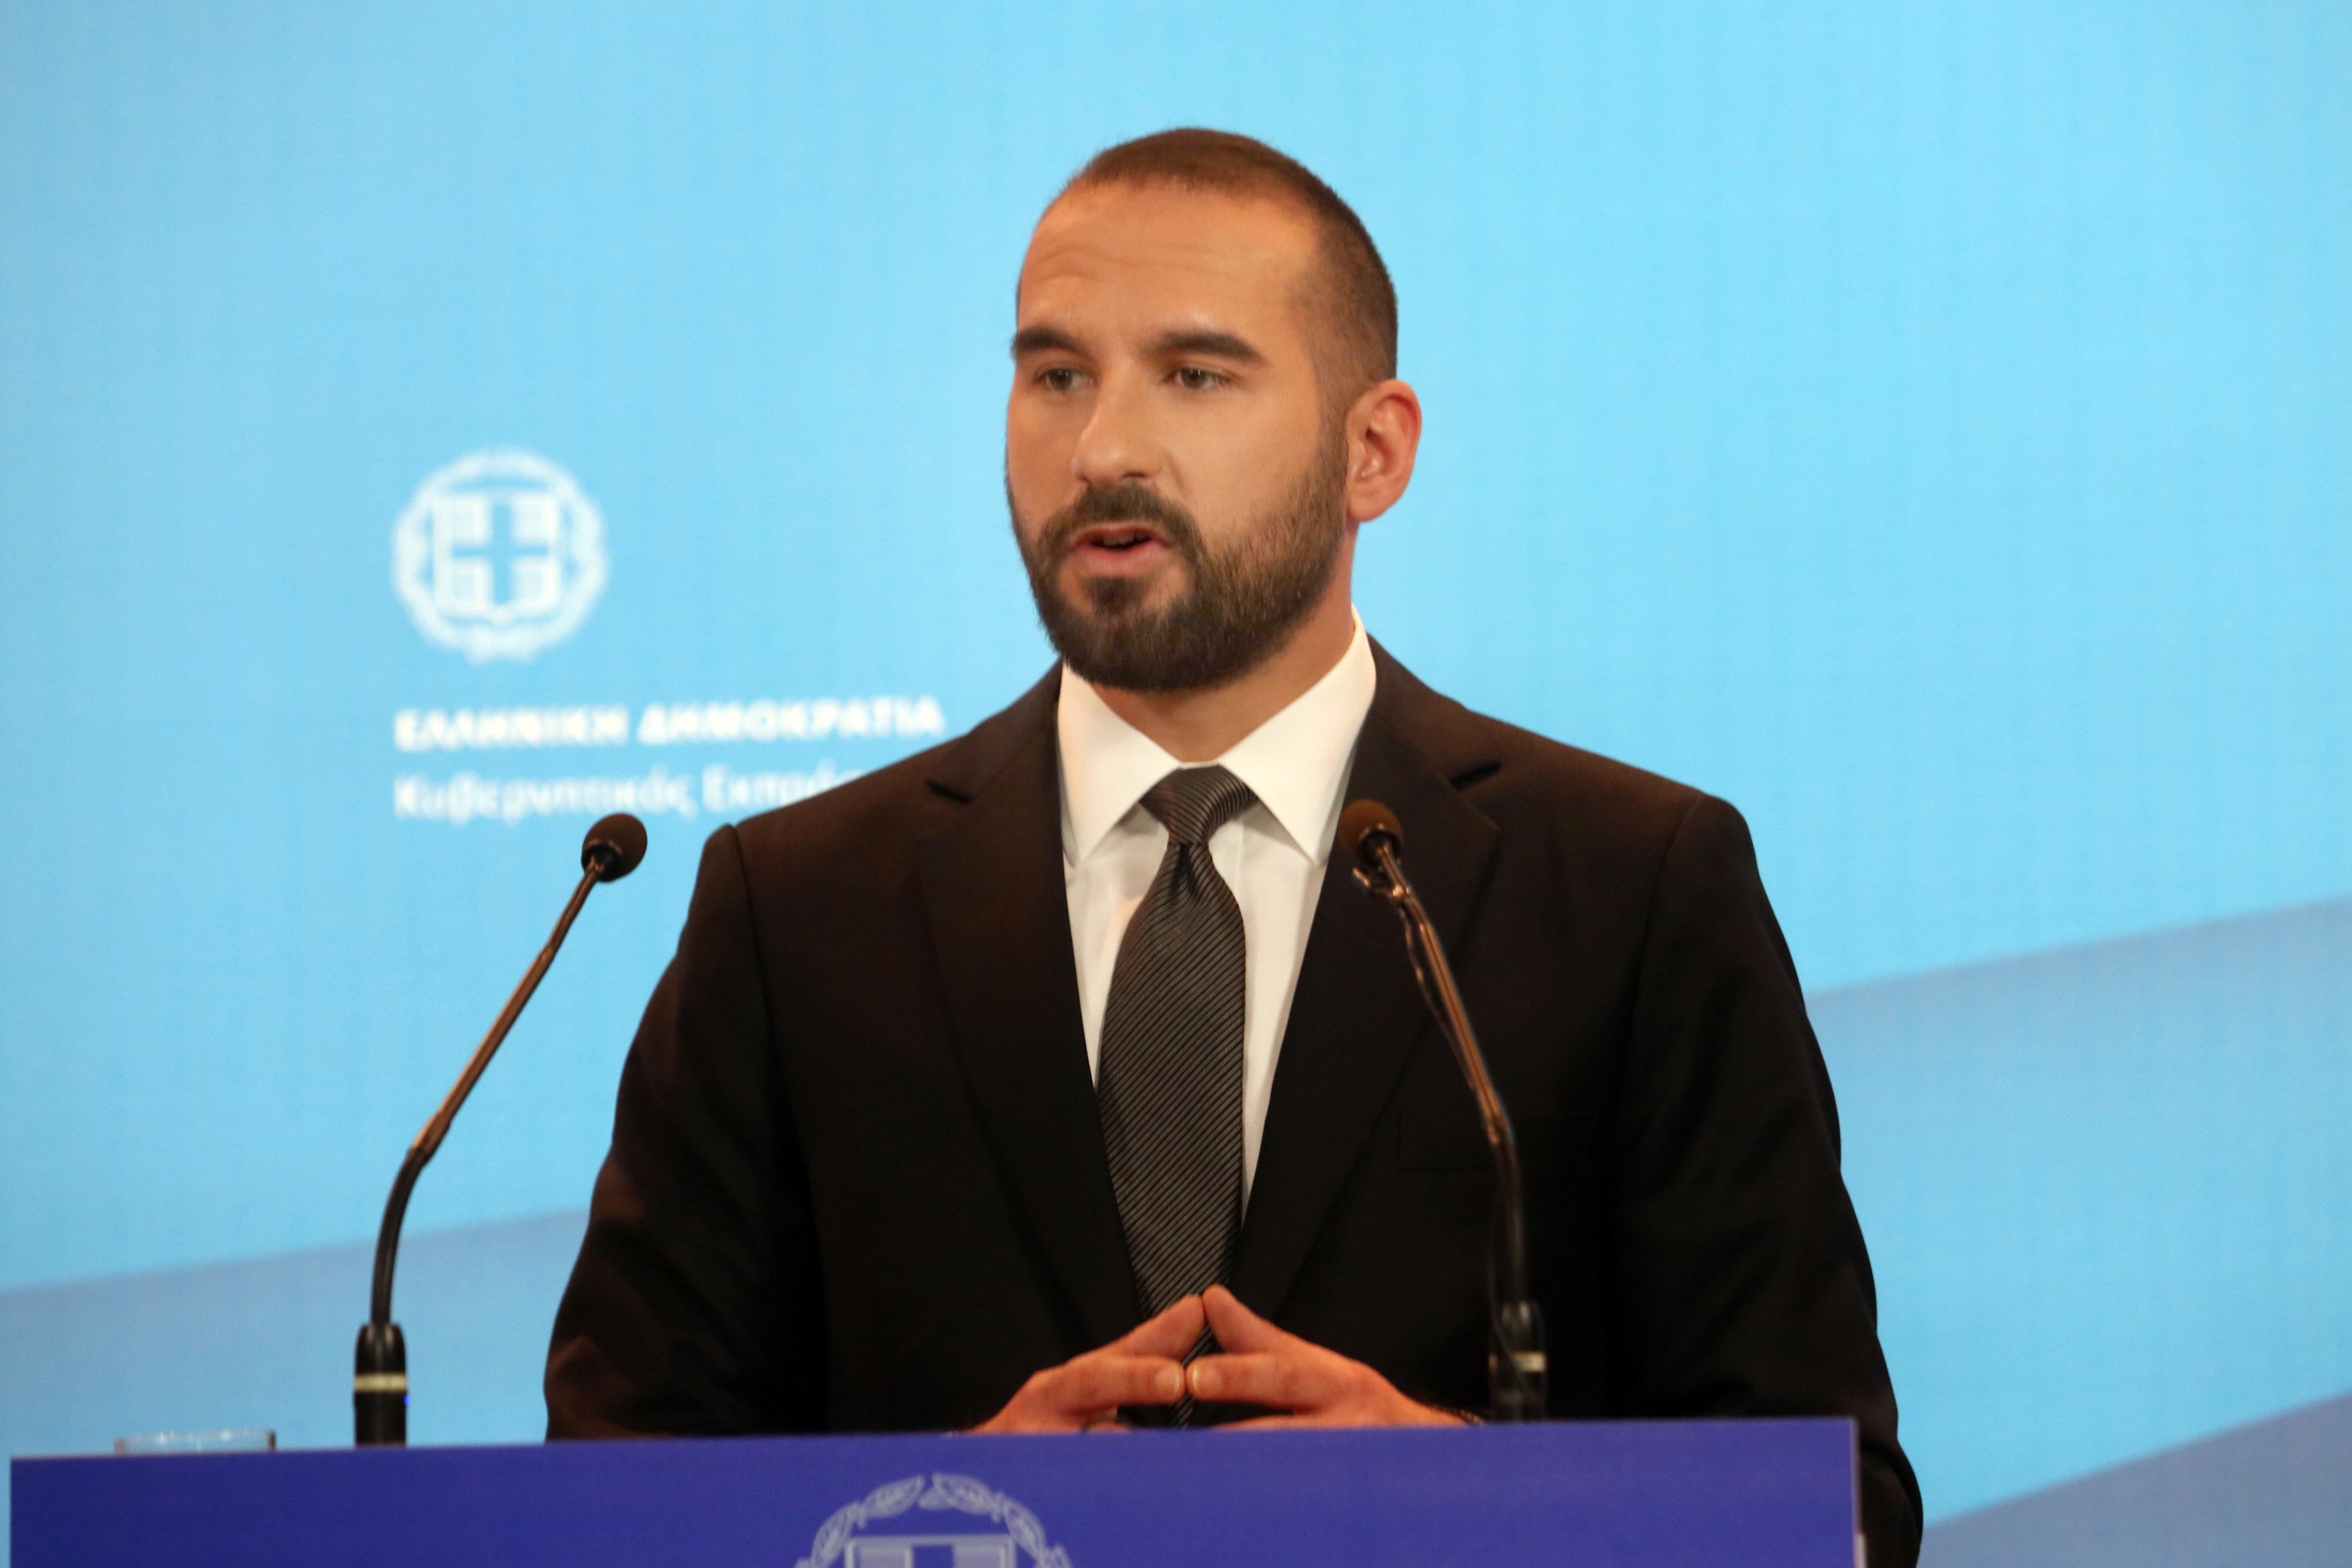 Τζανακόπουλος: Η συνολική συμφωνία θα σημάνει την έξοδο από την κρίση